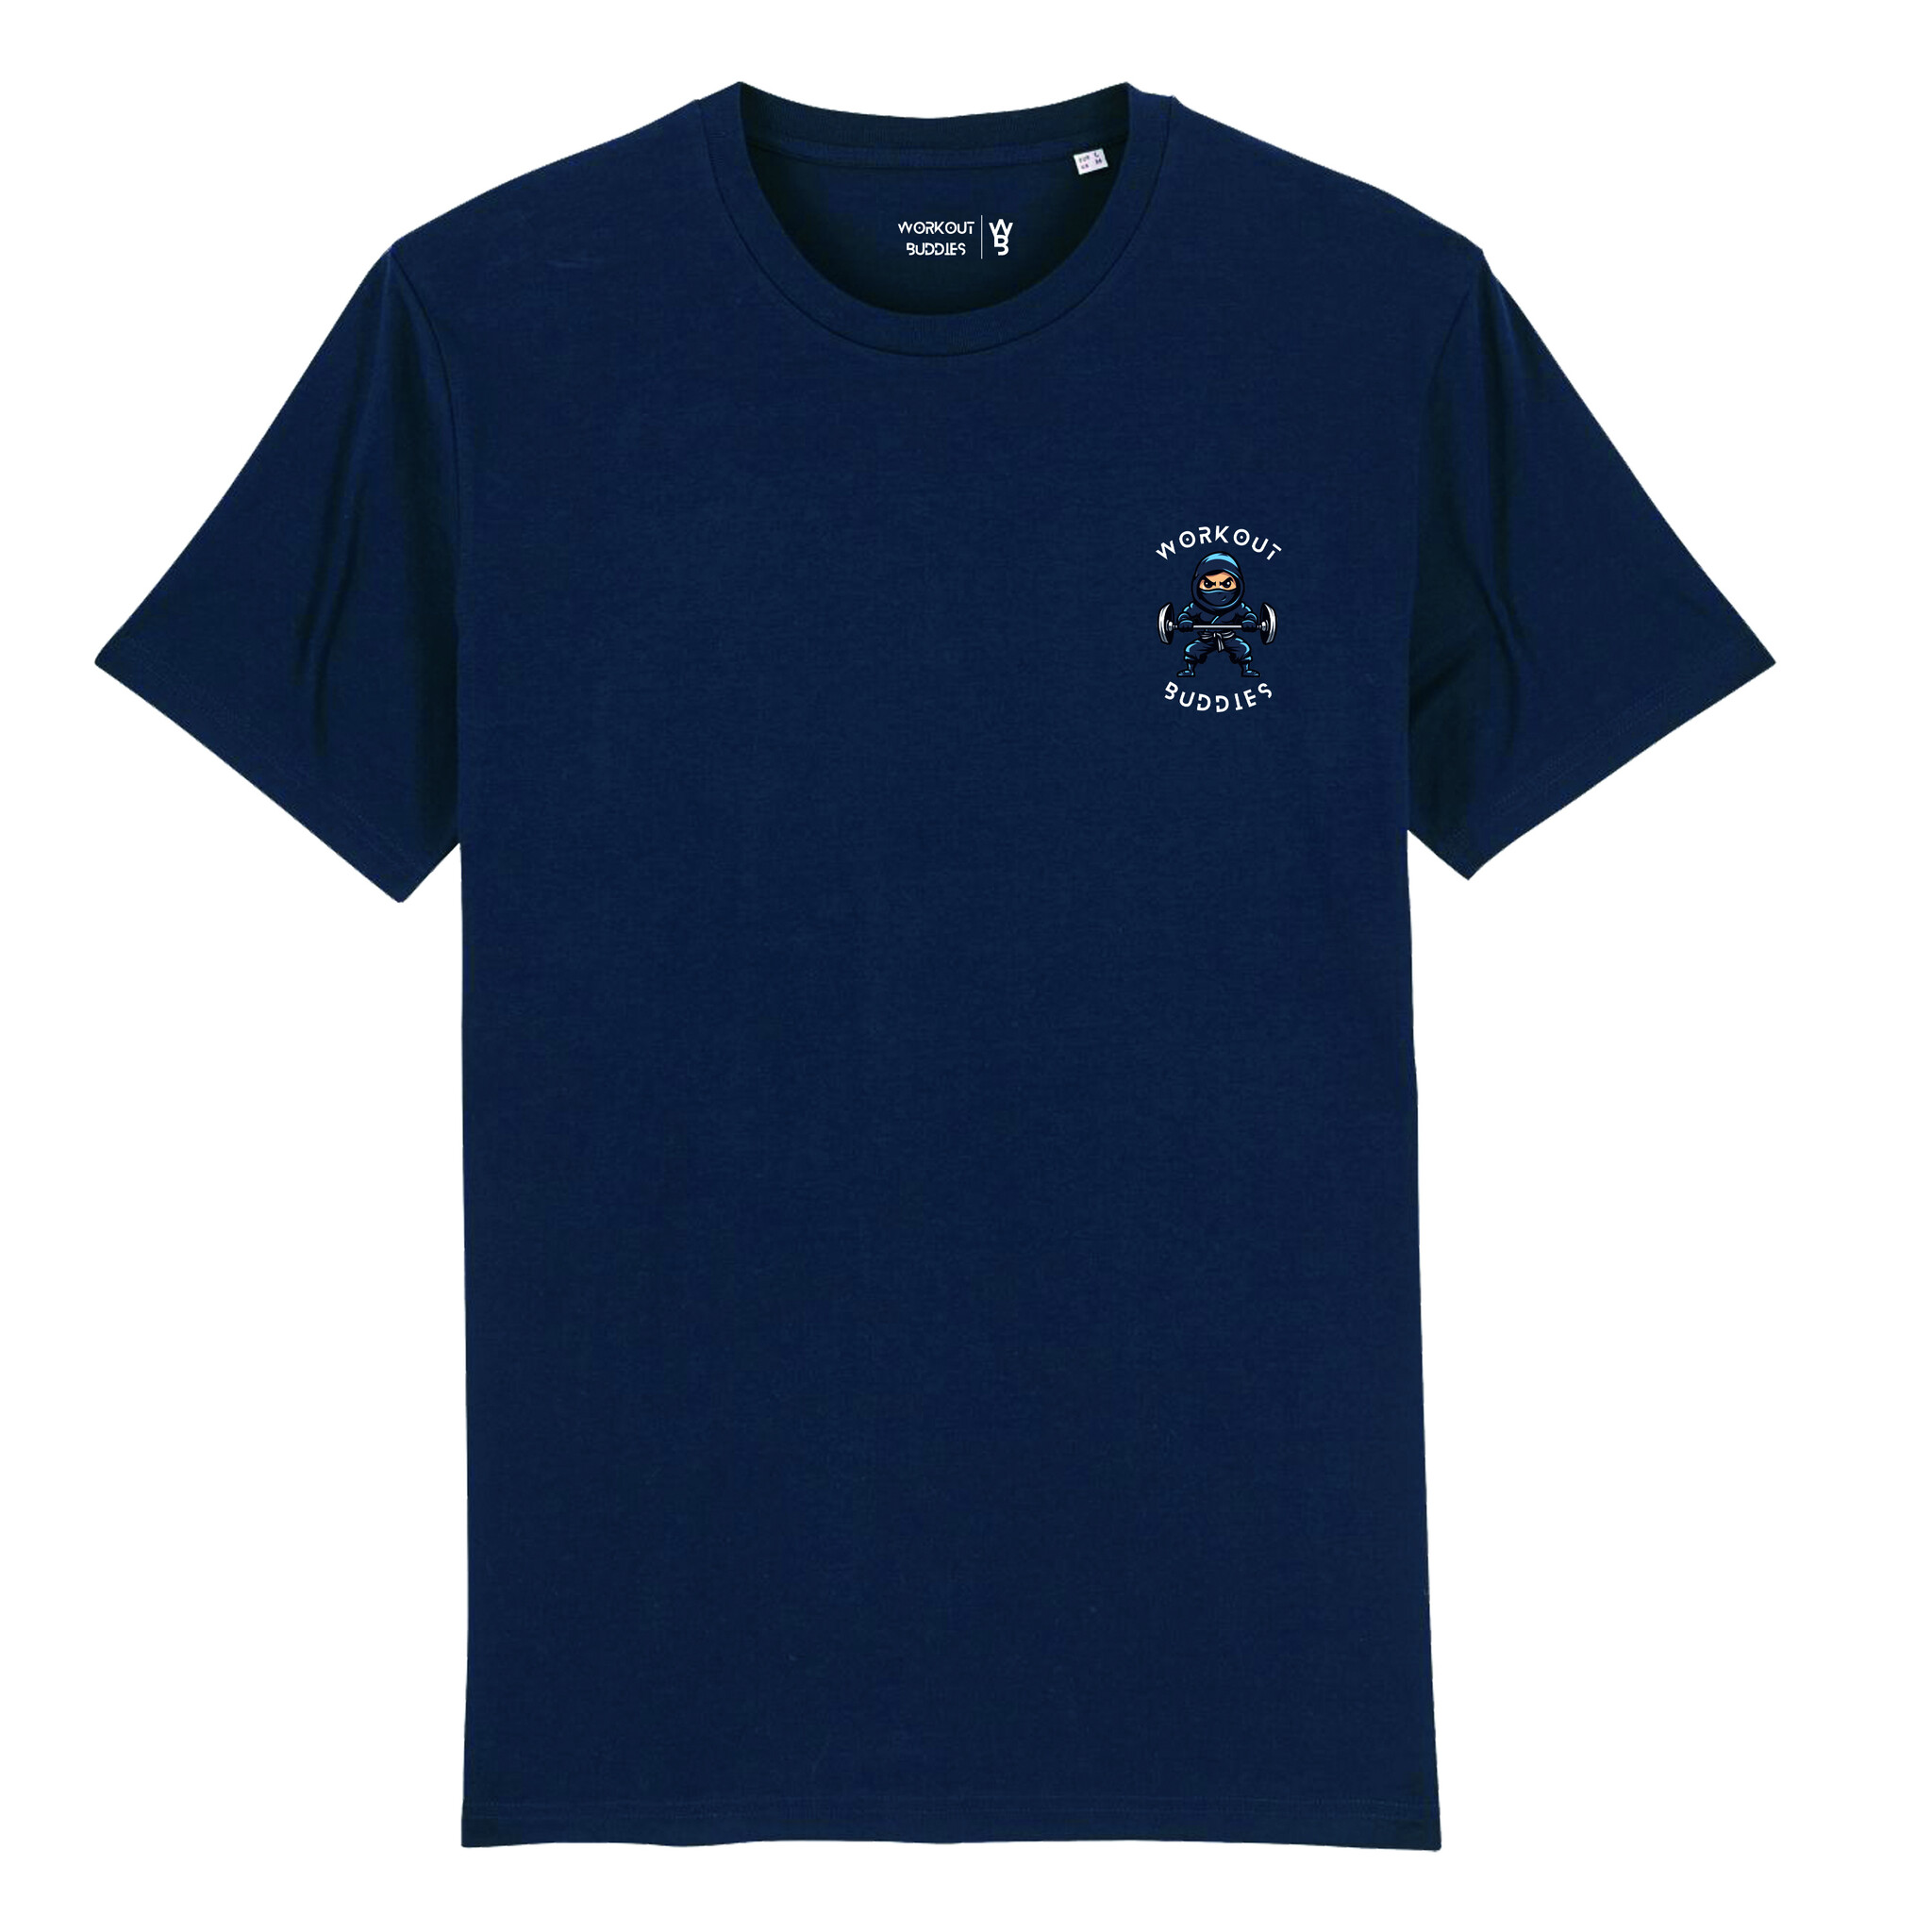 Nun-Chucky Regular T-shirt Navy - Shops.topfanz.com